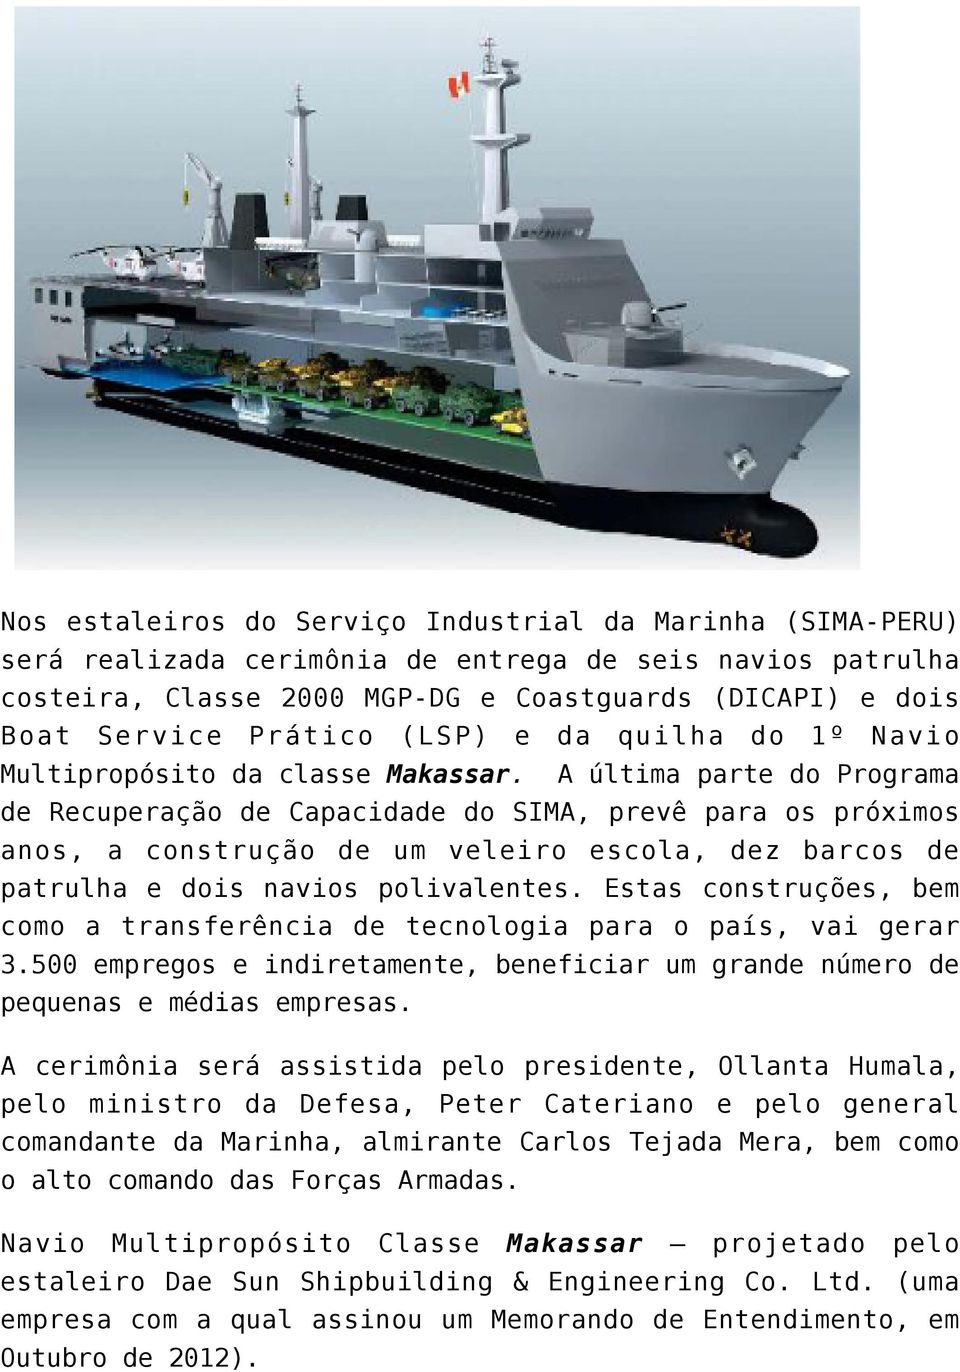 A última parte do Programa de Recuperação de Capacidade do SIMA, prevê para os próximos anos, a construção de um veleiro escola, dez barcos de patrulha e dois navios polivalentes.